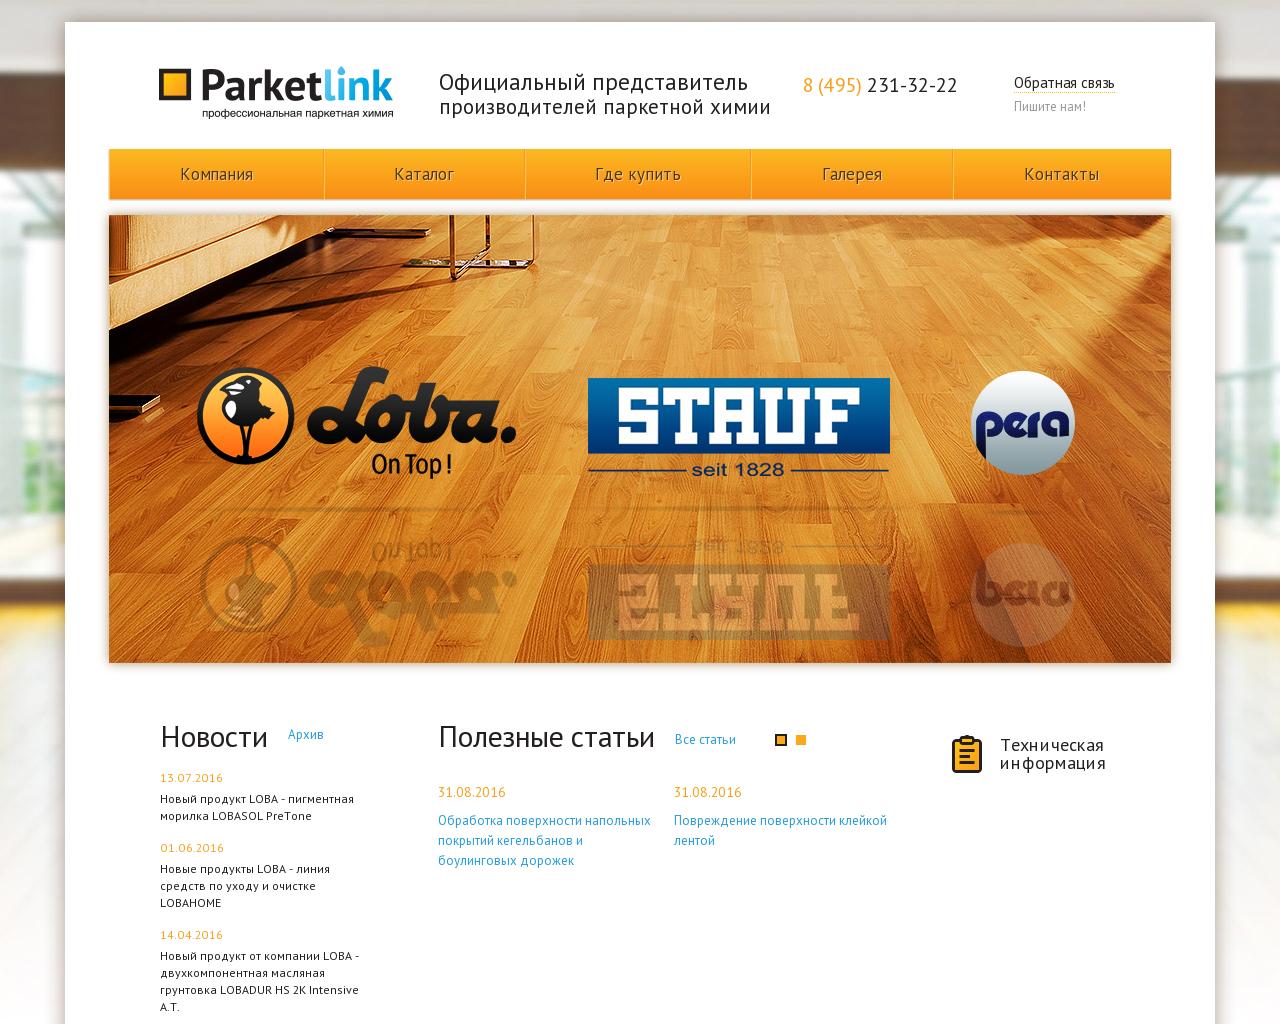 Изображение сайта parketlink.ru в разрешении 1280x1024